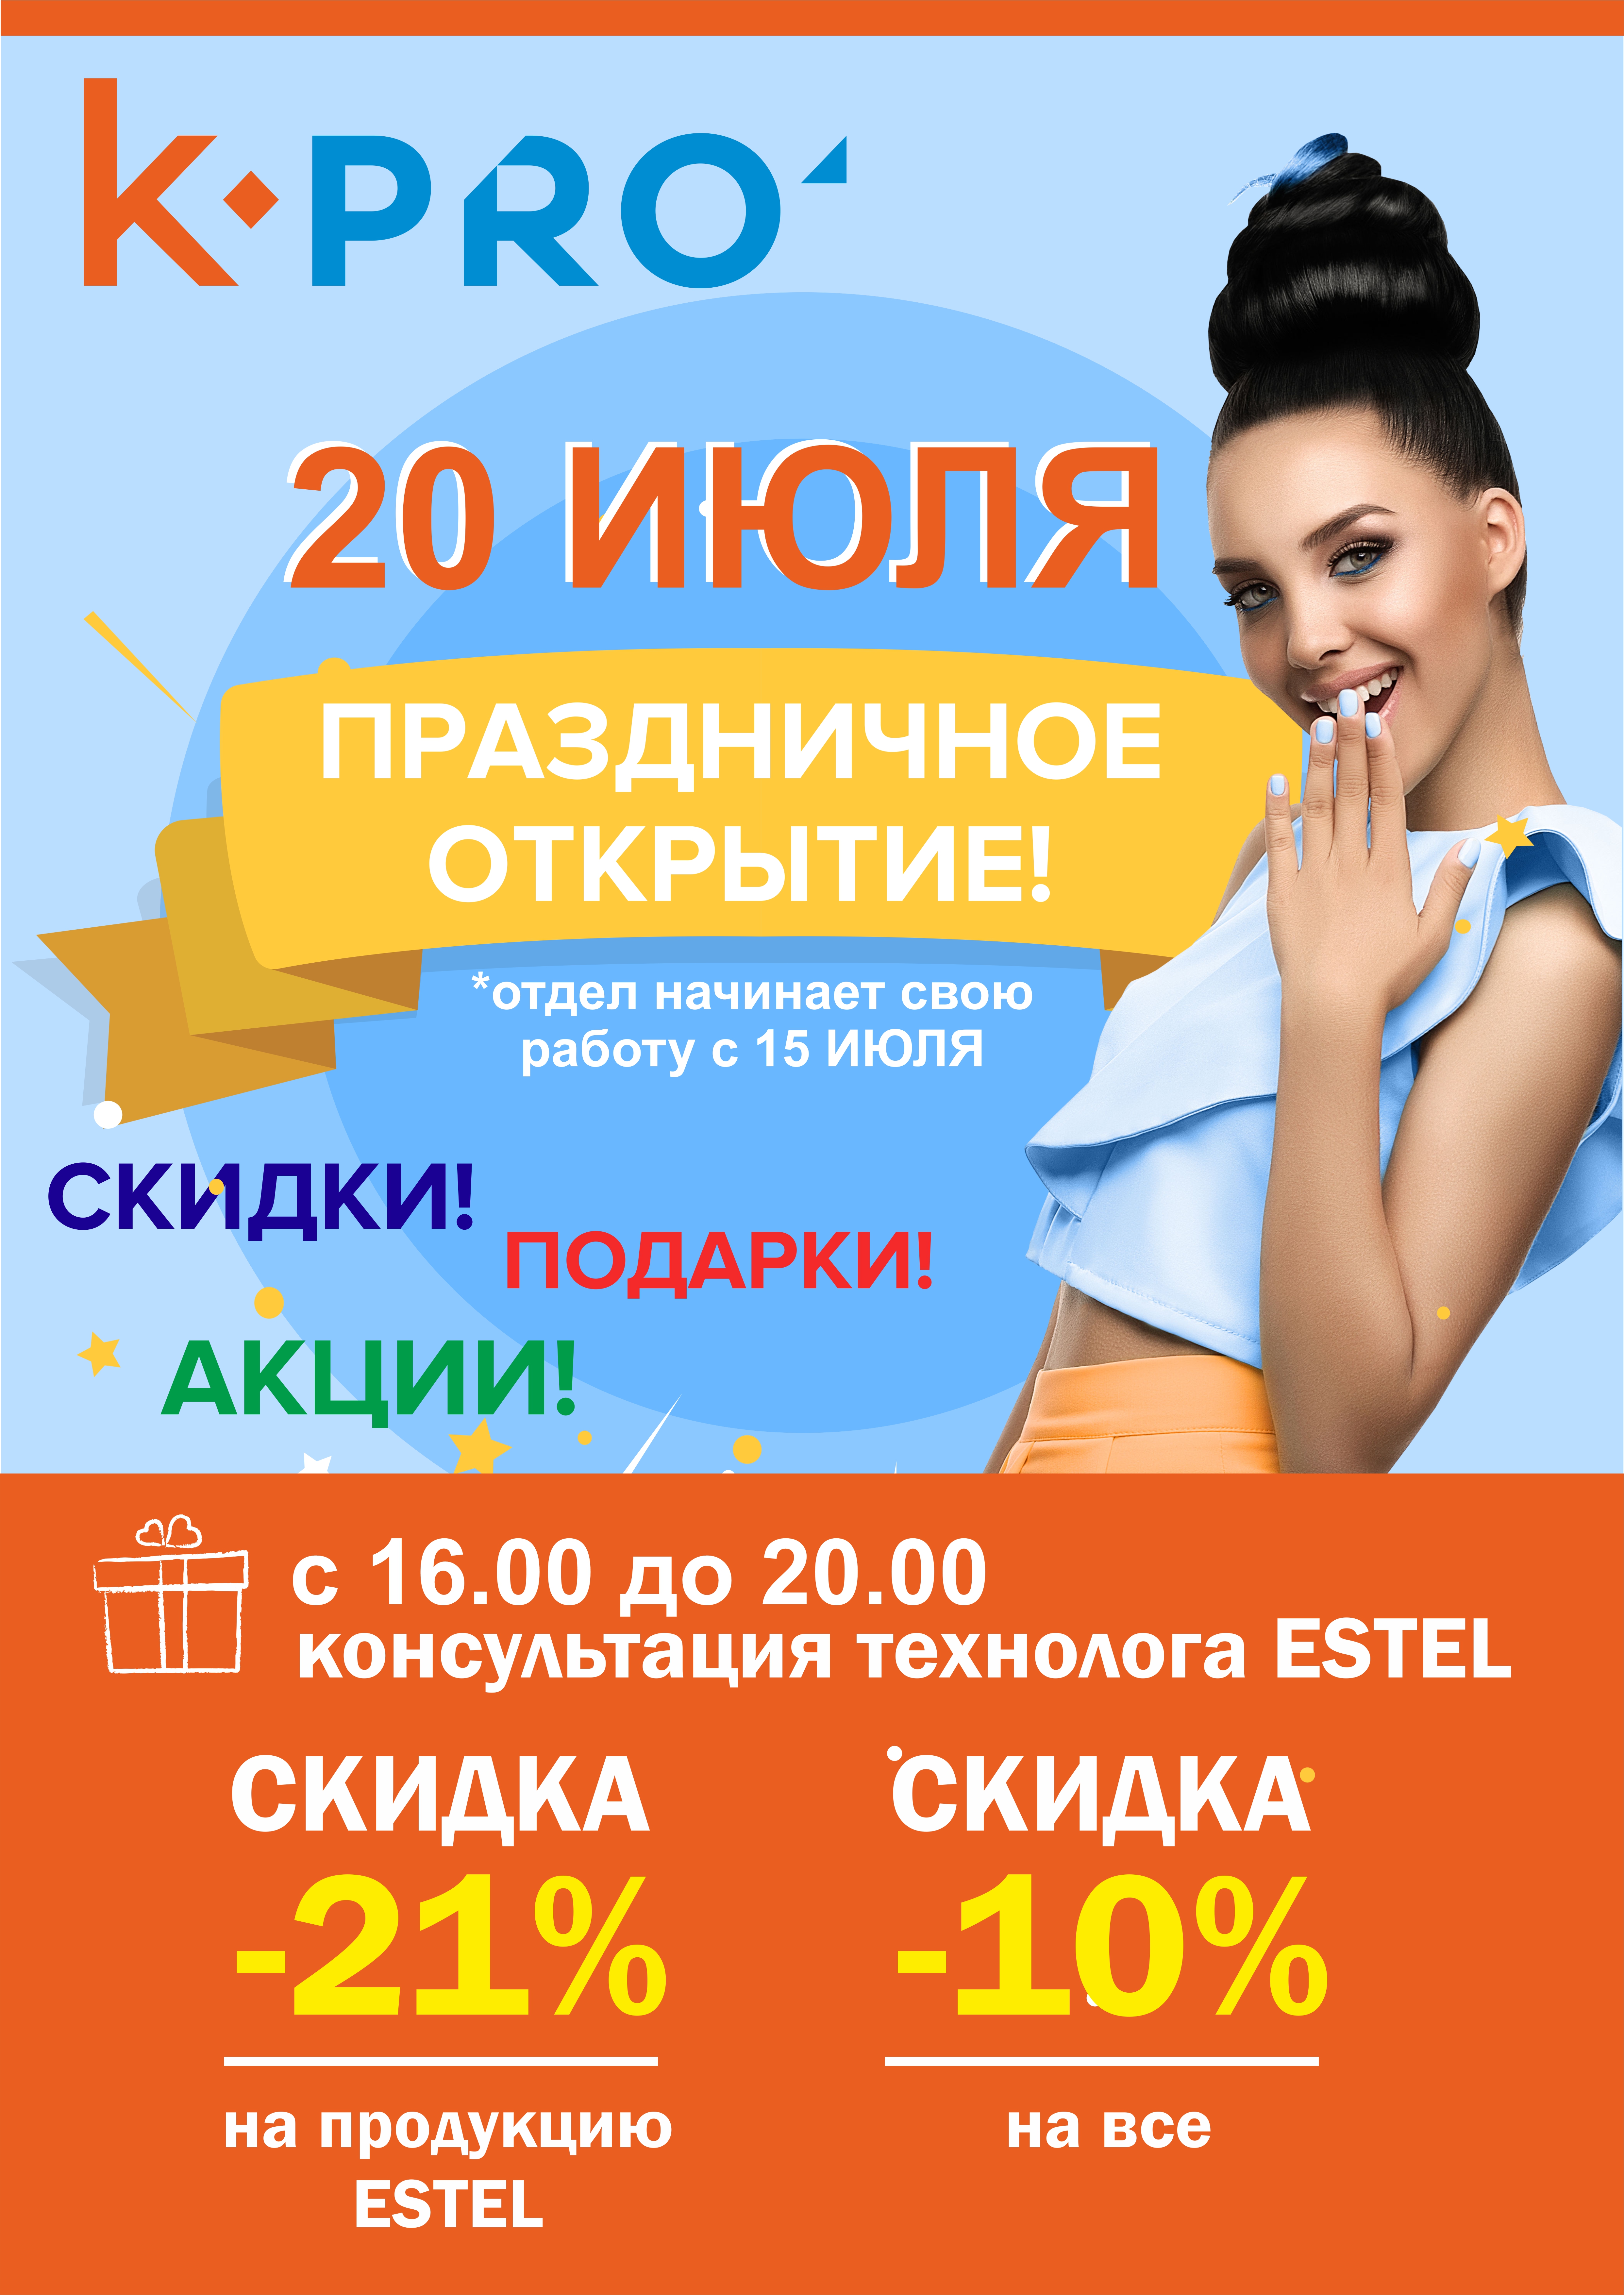 20 июля состоится праздничное открытие магазина «Косметик’PRO»